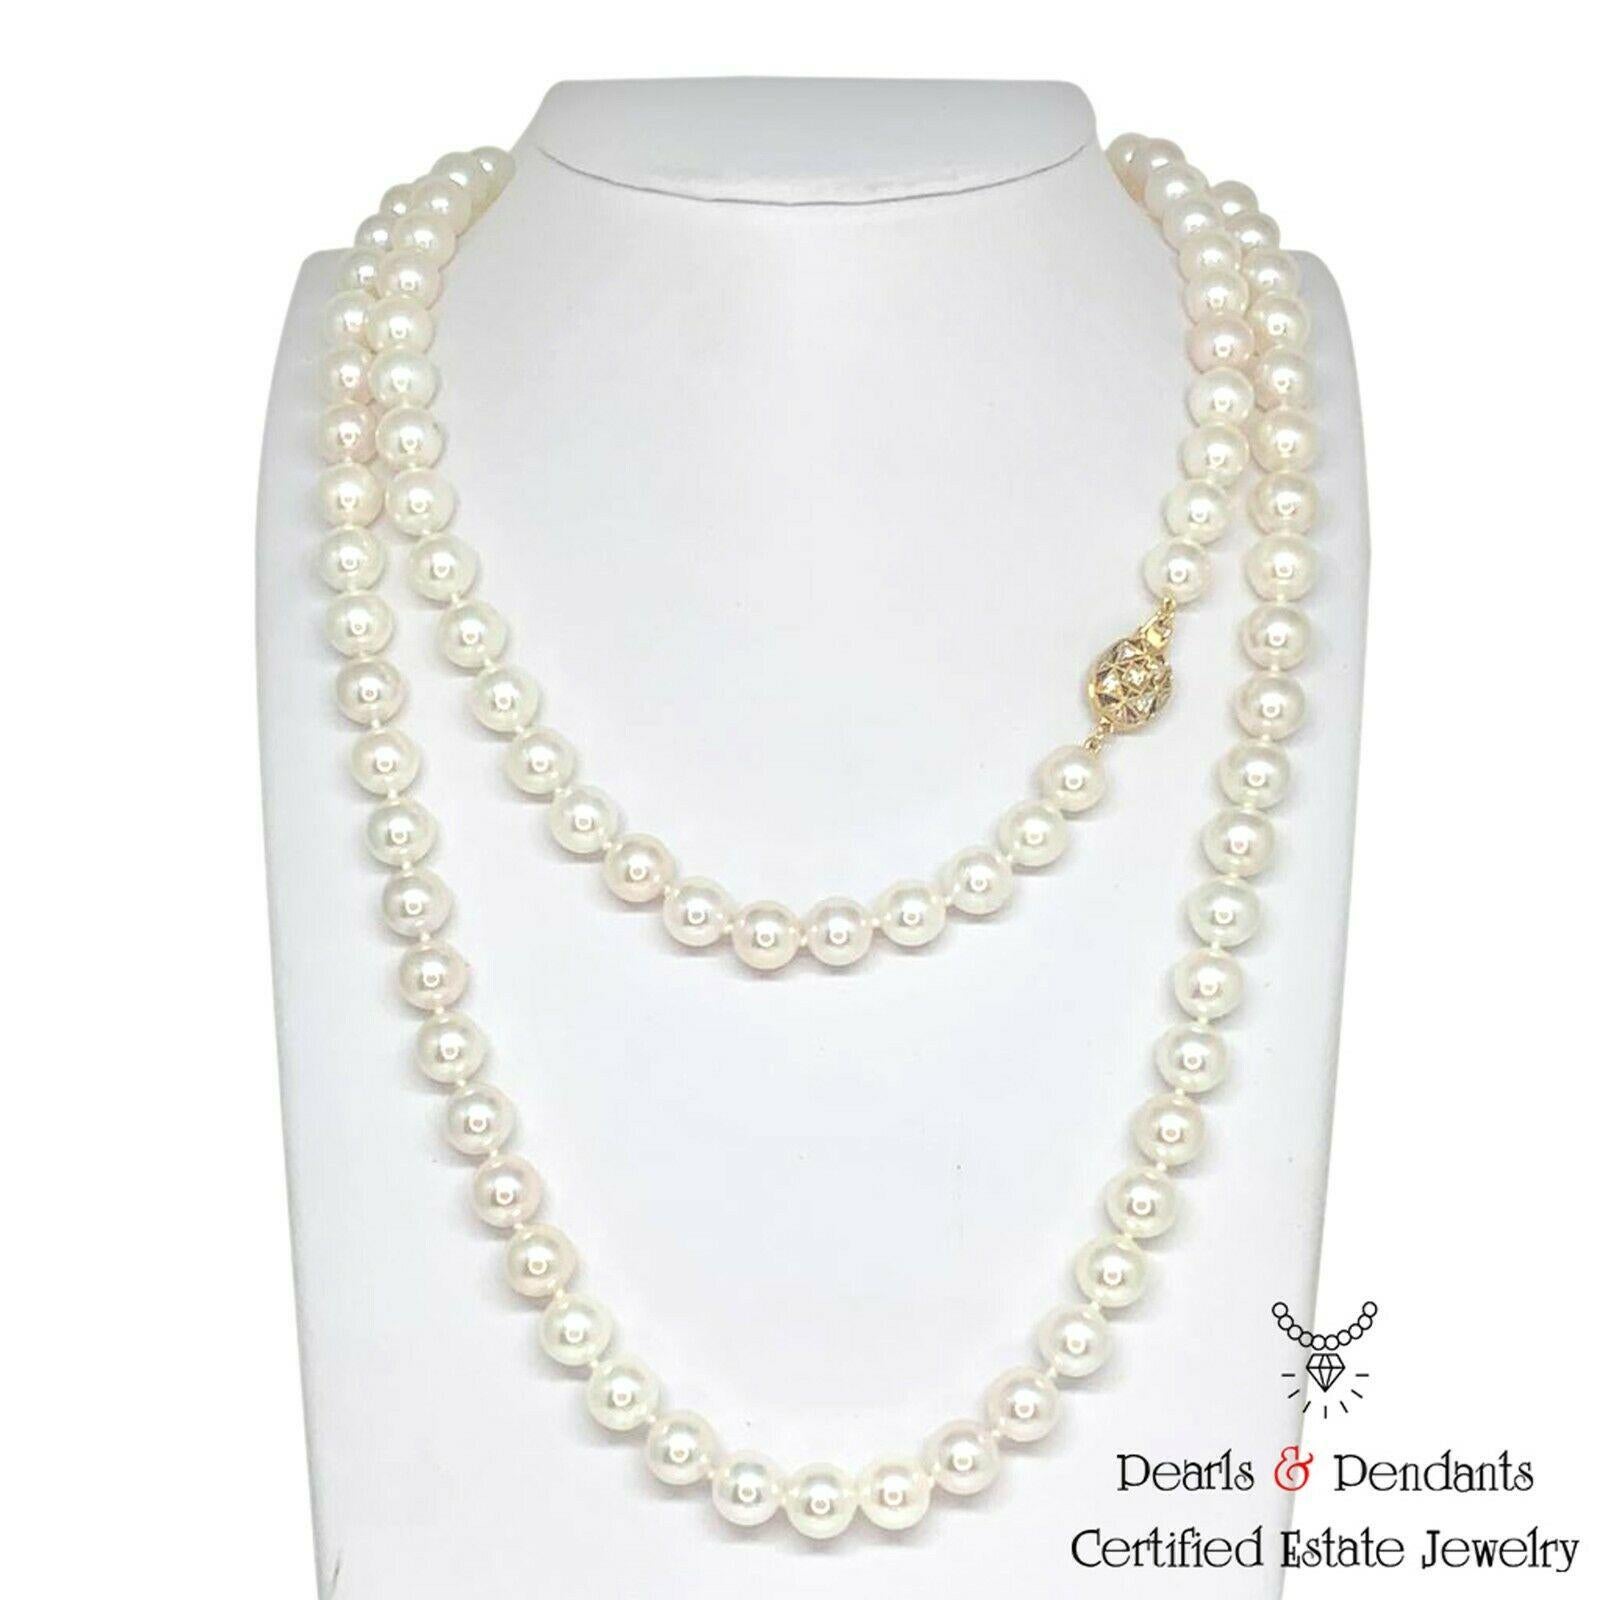 Collier de perles Akoya de qualité supérieure avec diamants en or 14k 8.5 mm 36 in Certifié $9,750 010932

Il s'agit d'une pièce de joaillerie unique, glamour et faite sur mesure !

Rien ne dit mieux 